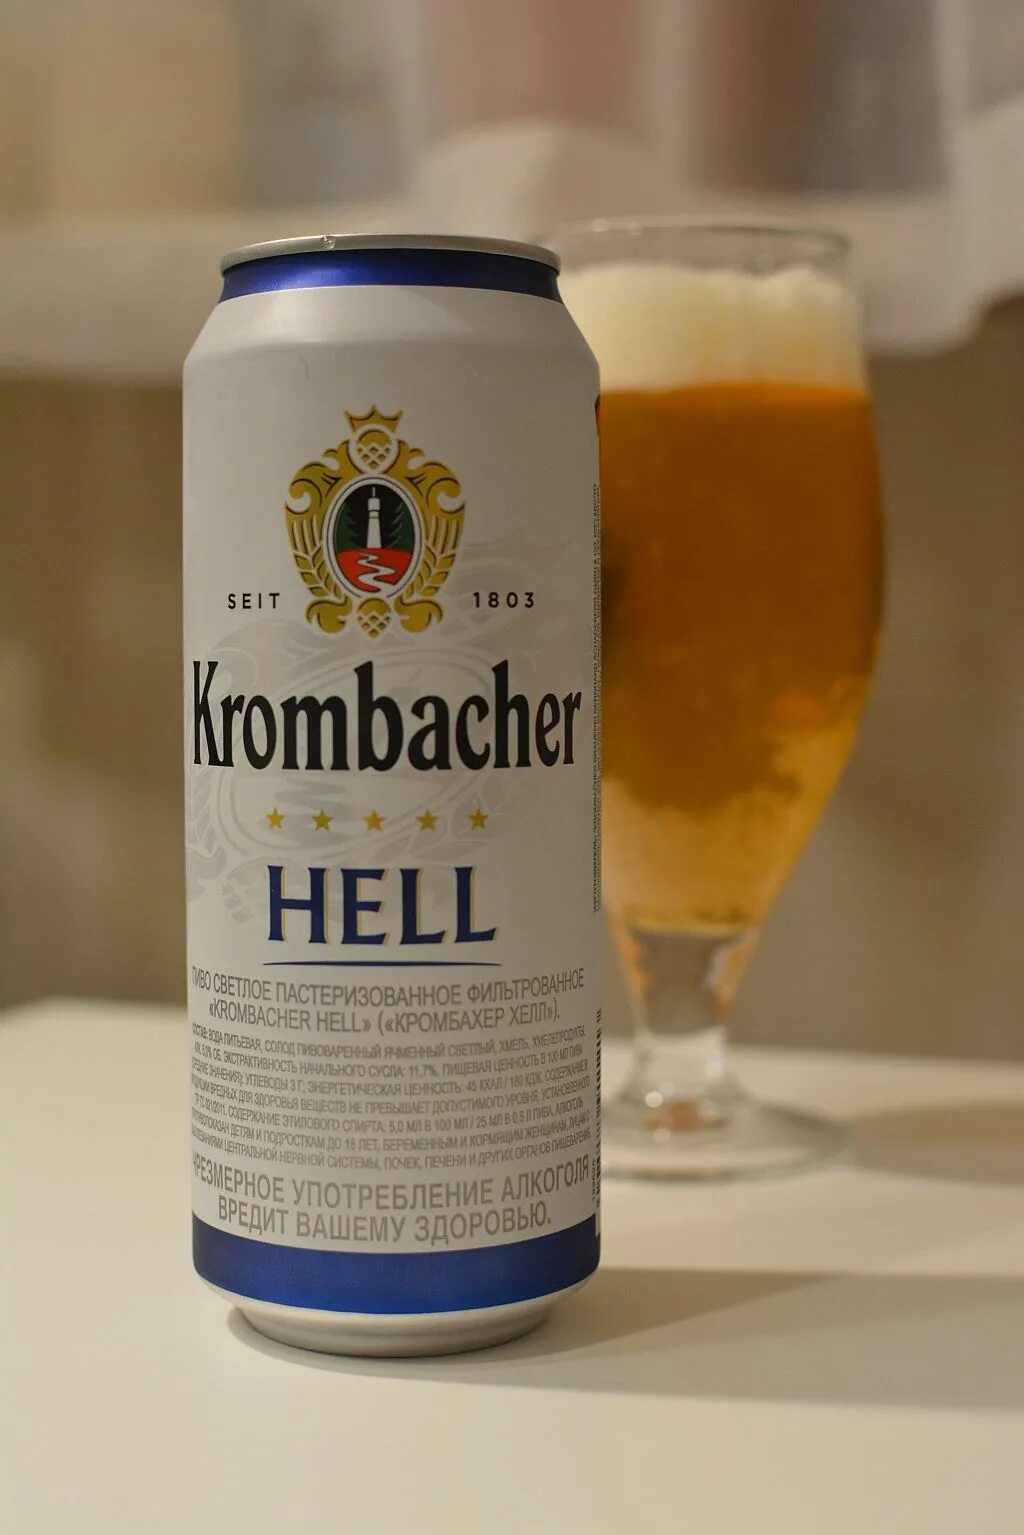 Hell пиво купить. Кромбахер Хель пиво. Krombacher Hell пиво светлое. Пиво светлое Krombacher Hell 0.5 л. Пиво Кромбахер Хелл алк 5 ж/б 0.5л.